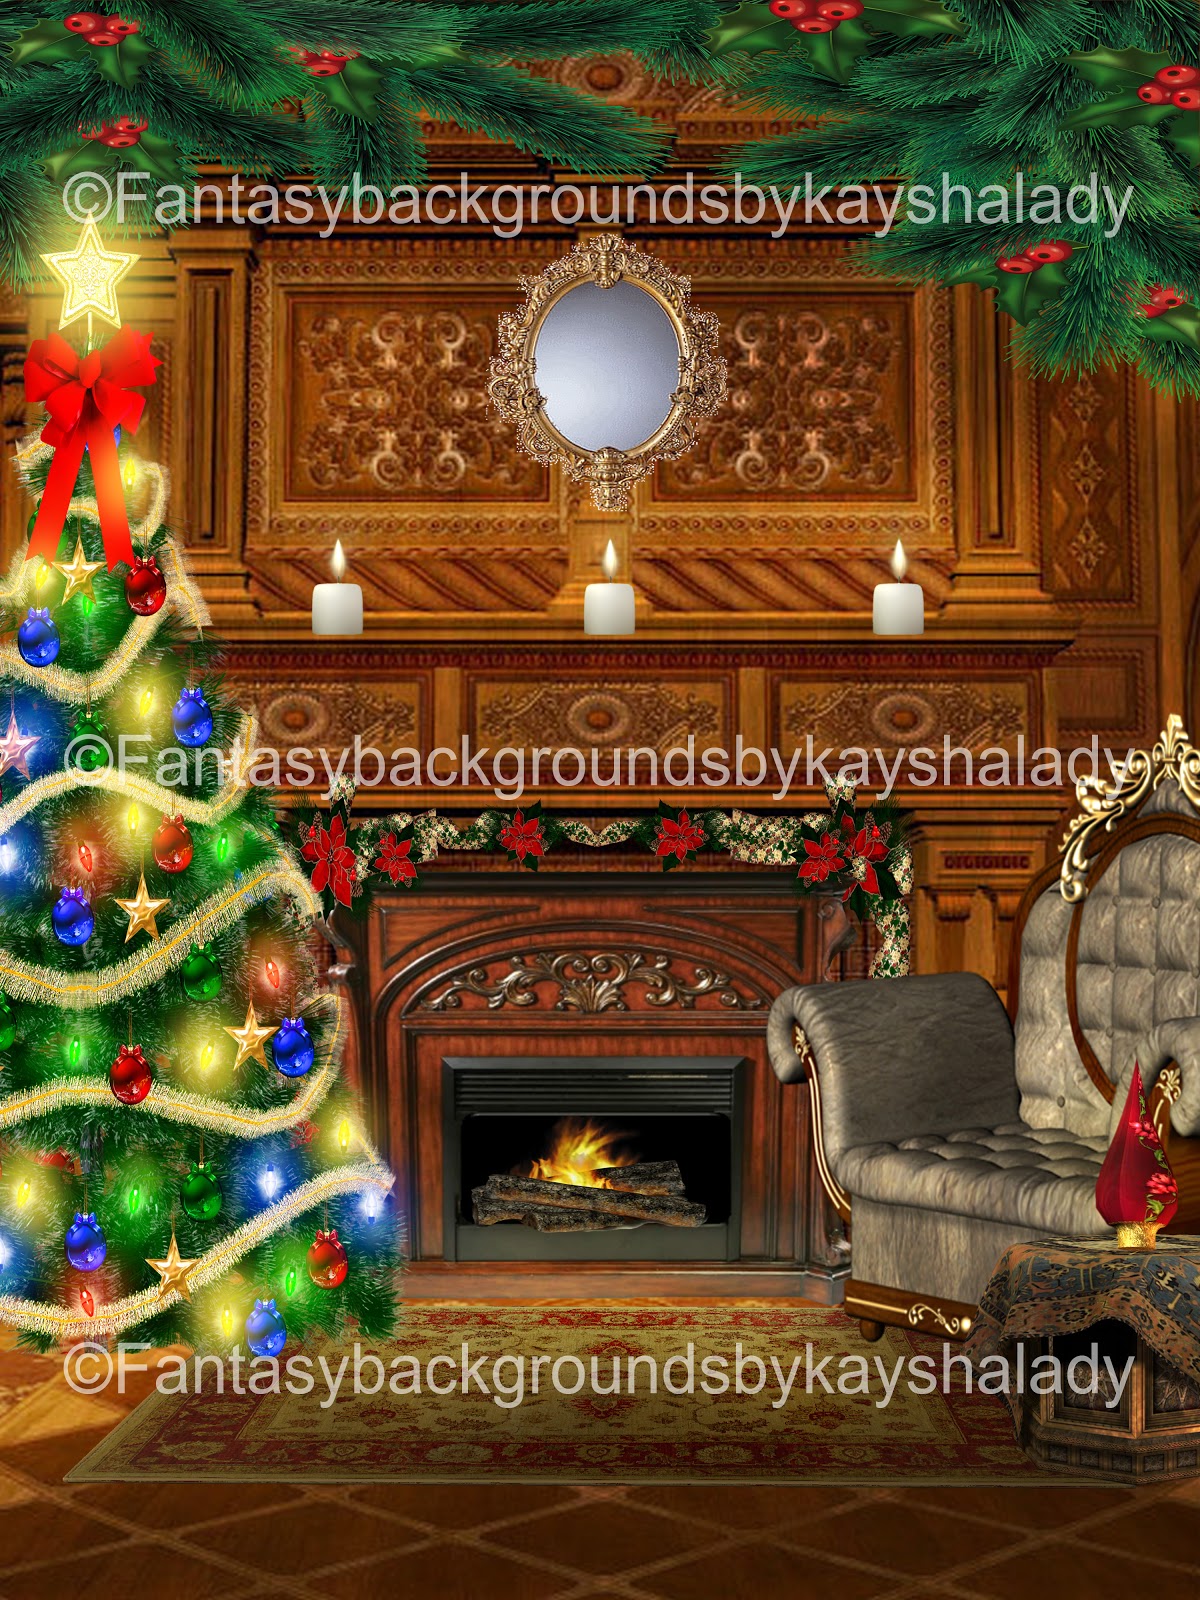 fantasybackgroundsbykayshalady: Christmas Fireplaces Fantasy ...